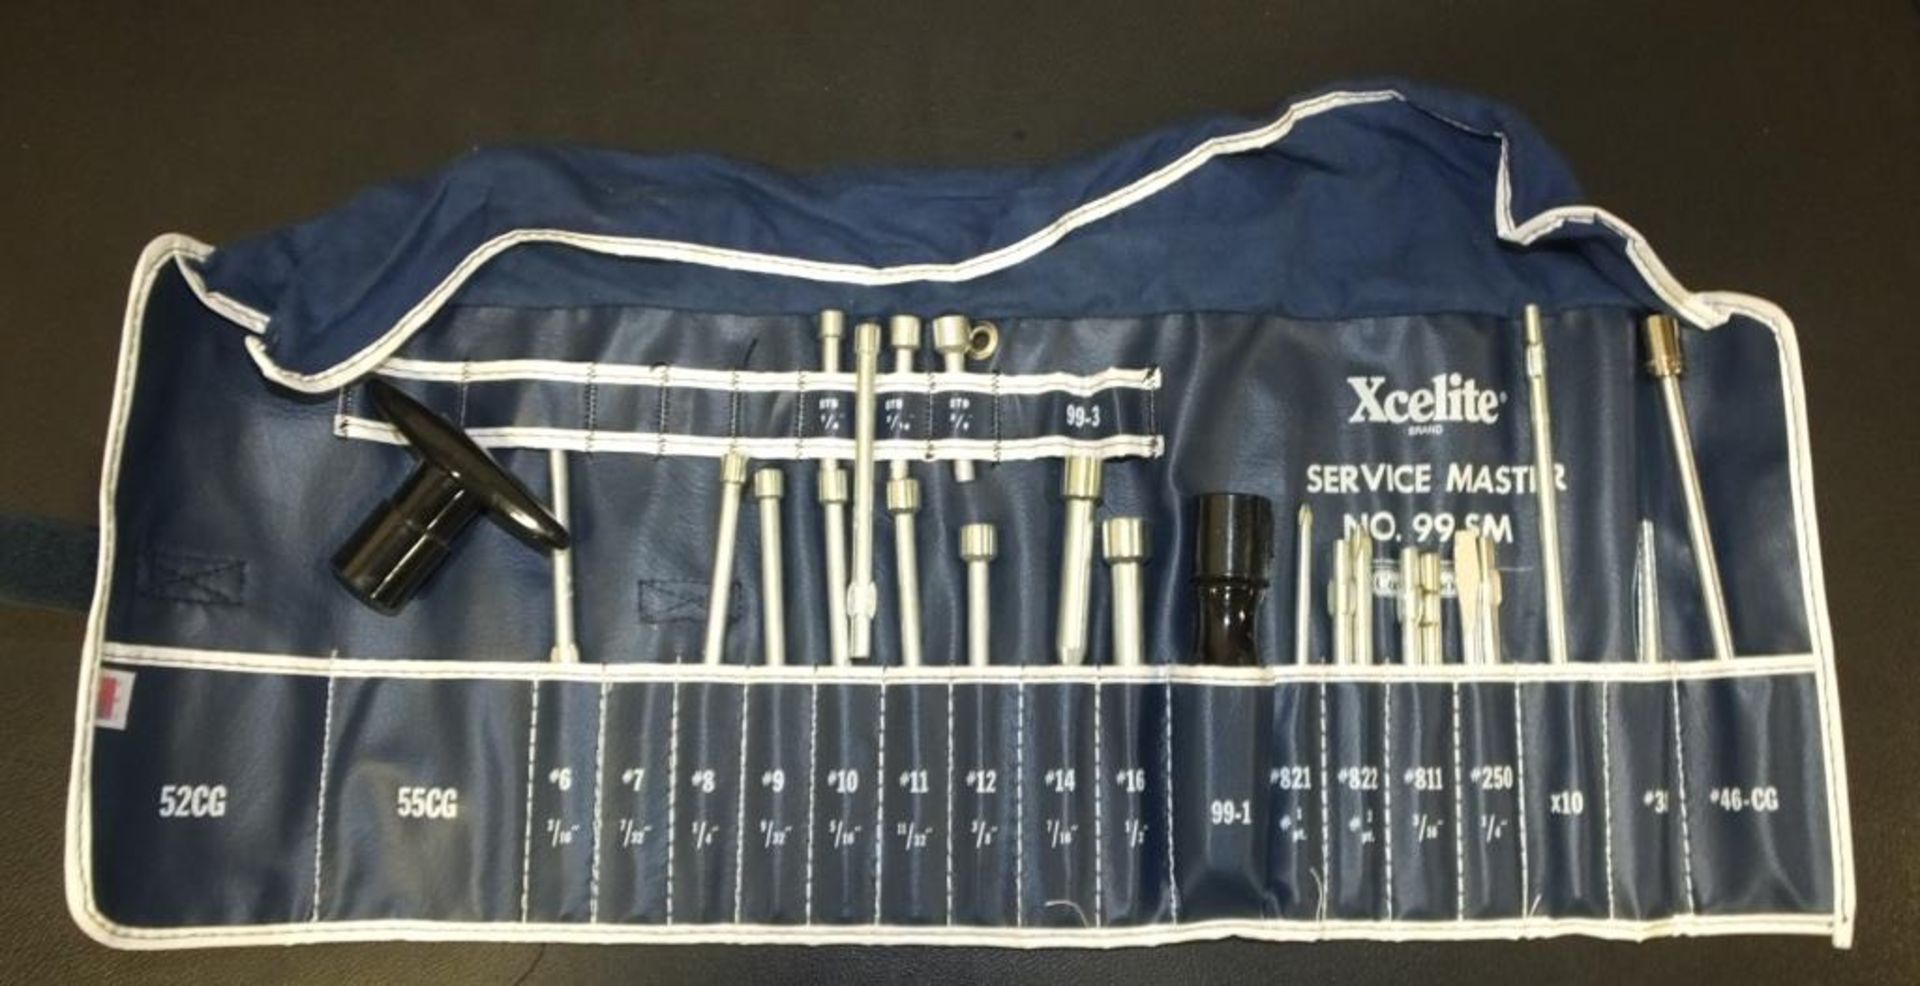 Xcelite No,99SM Service Master Tools Set